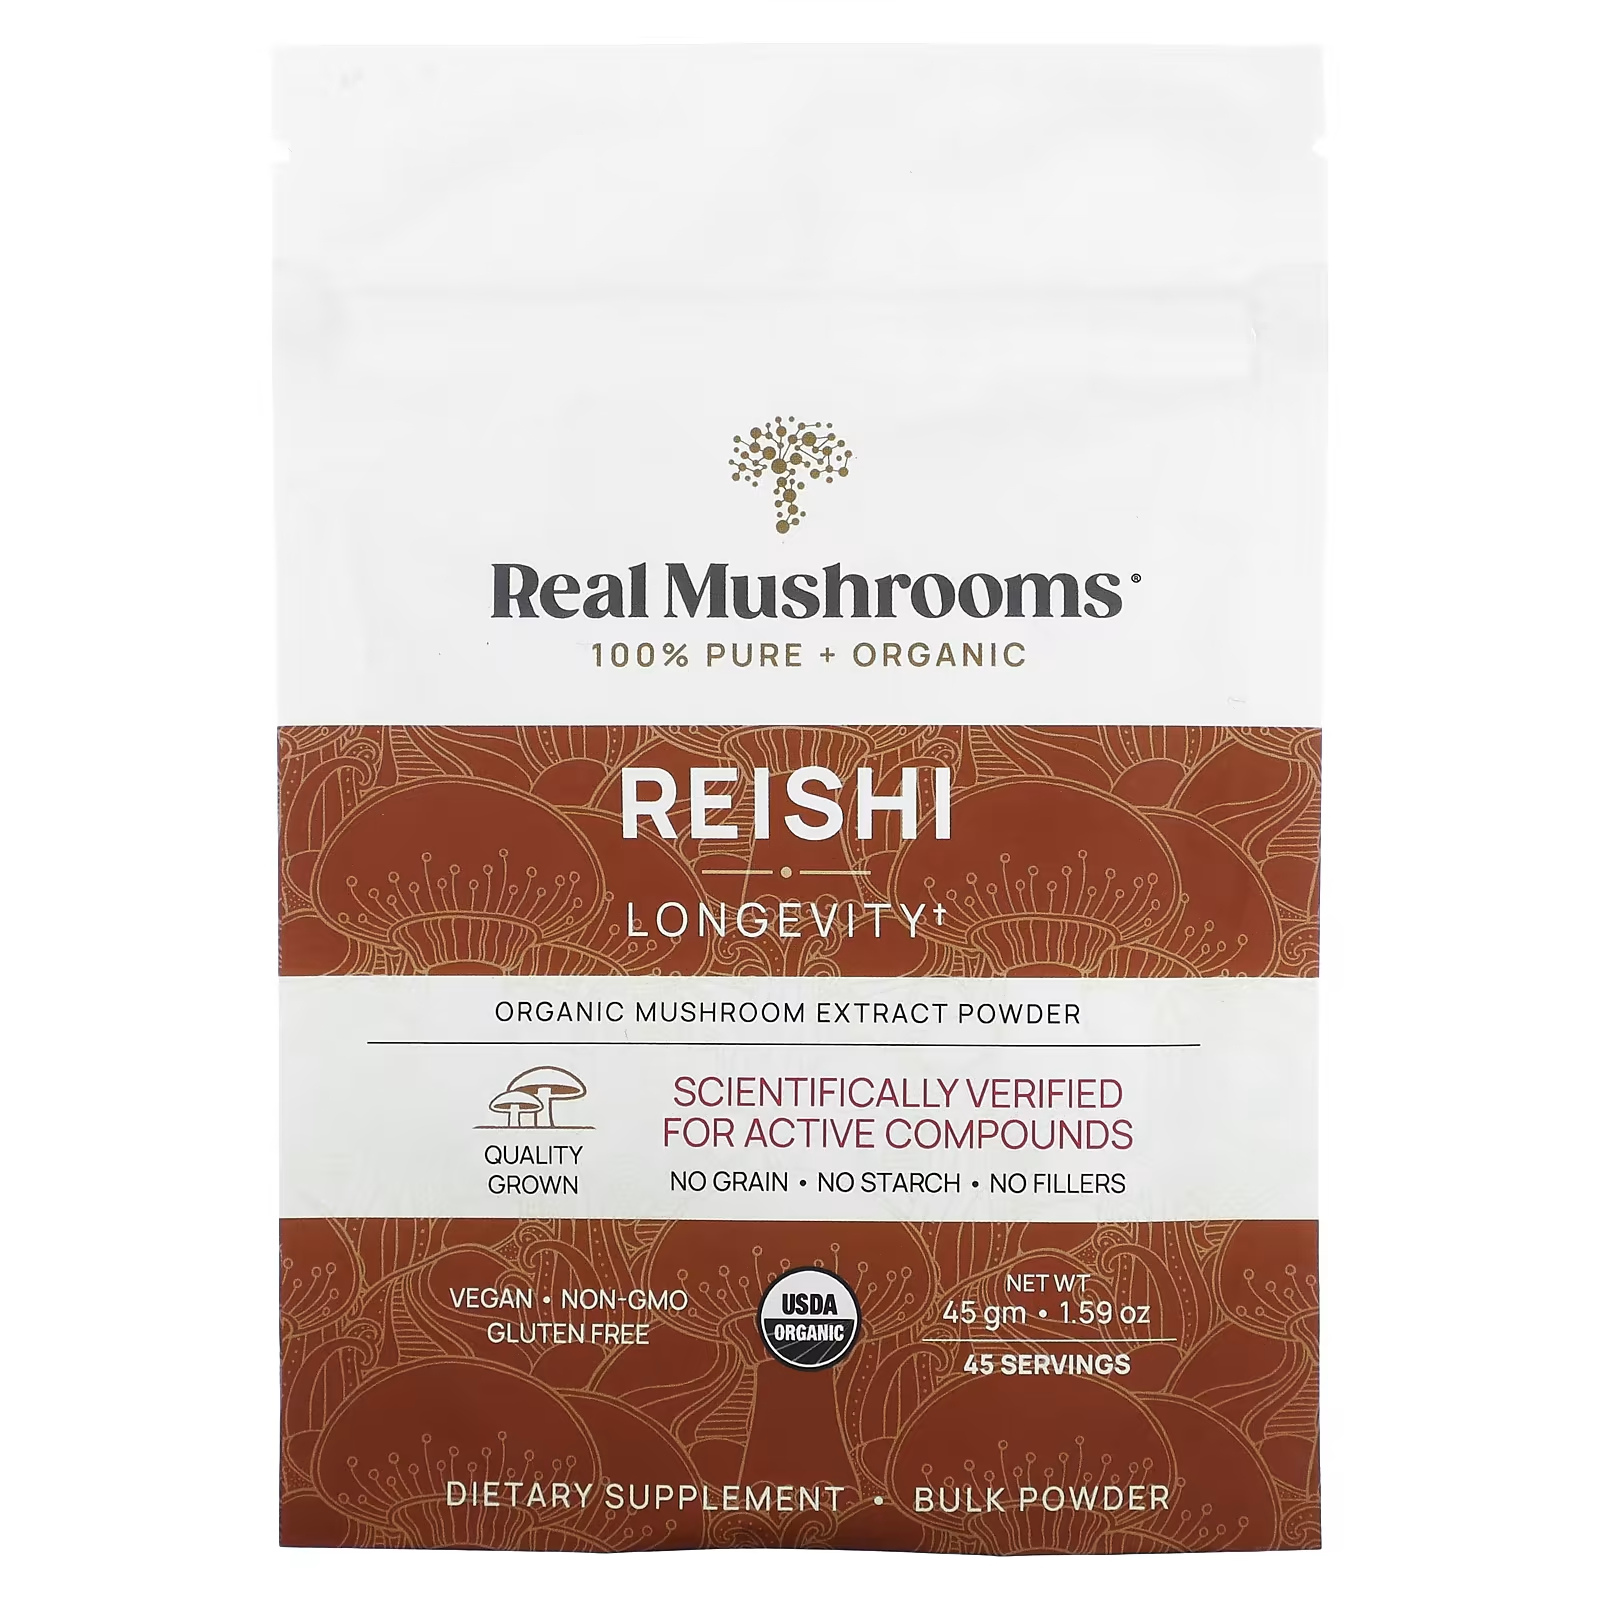 Порошок Real Mushrooms органического экстракта грибов рейши, 45 г